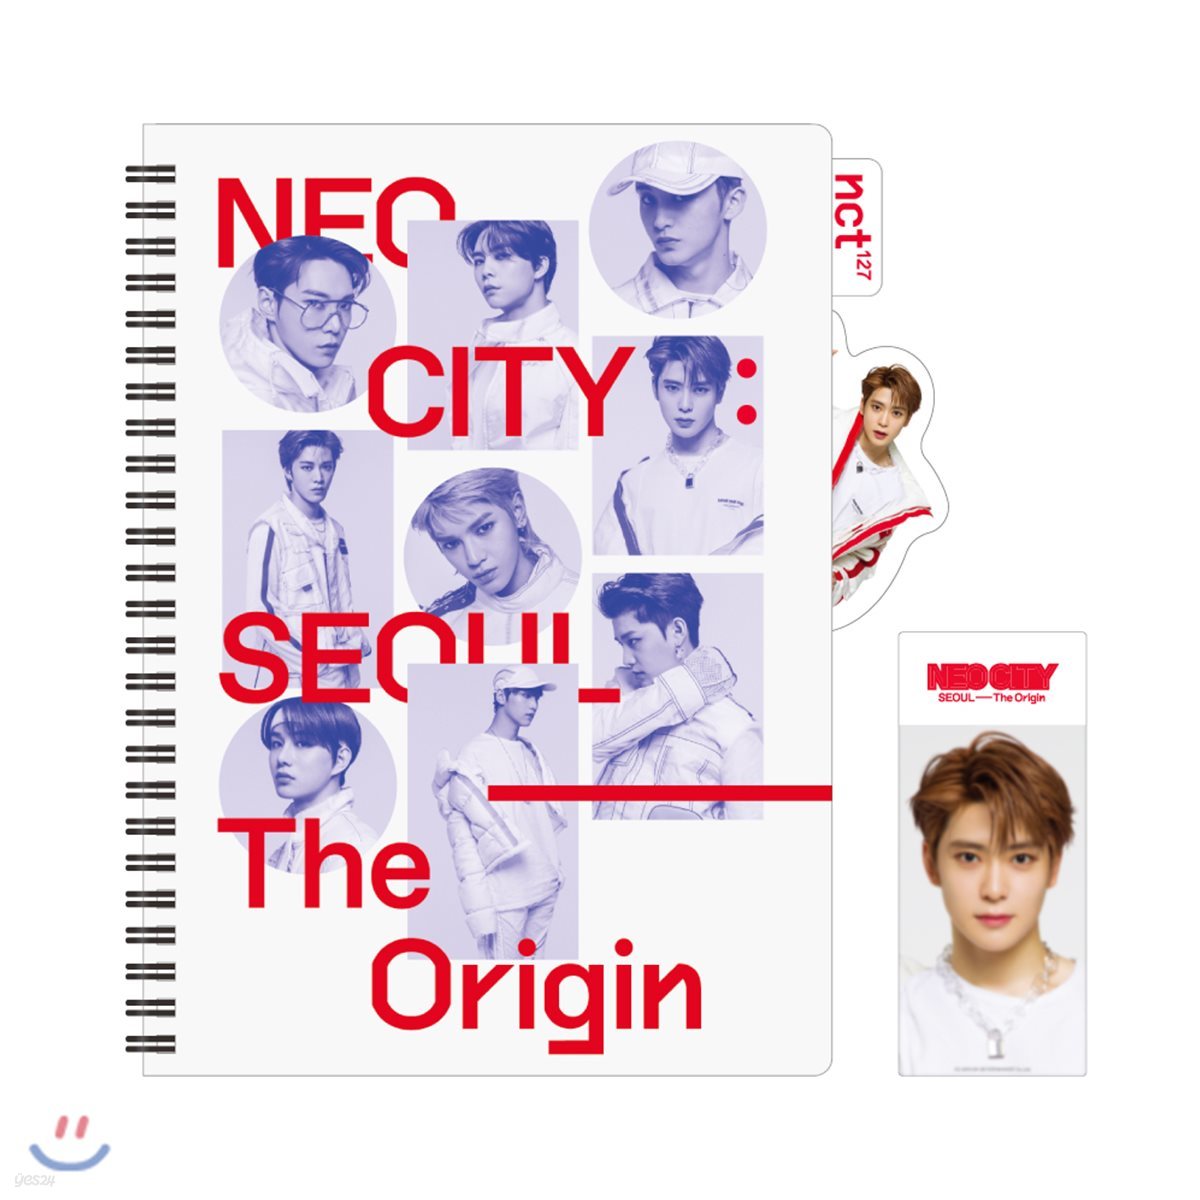 NCT 127 [NEO CITY : SEOUL - The Origin]- 인덱스노트+북마크 [재현]